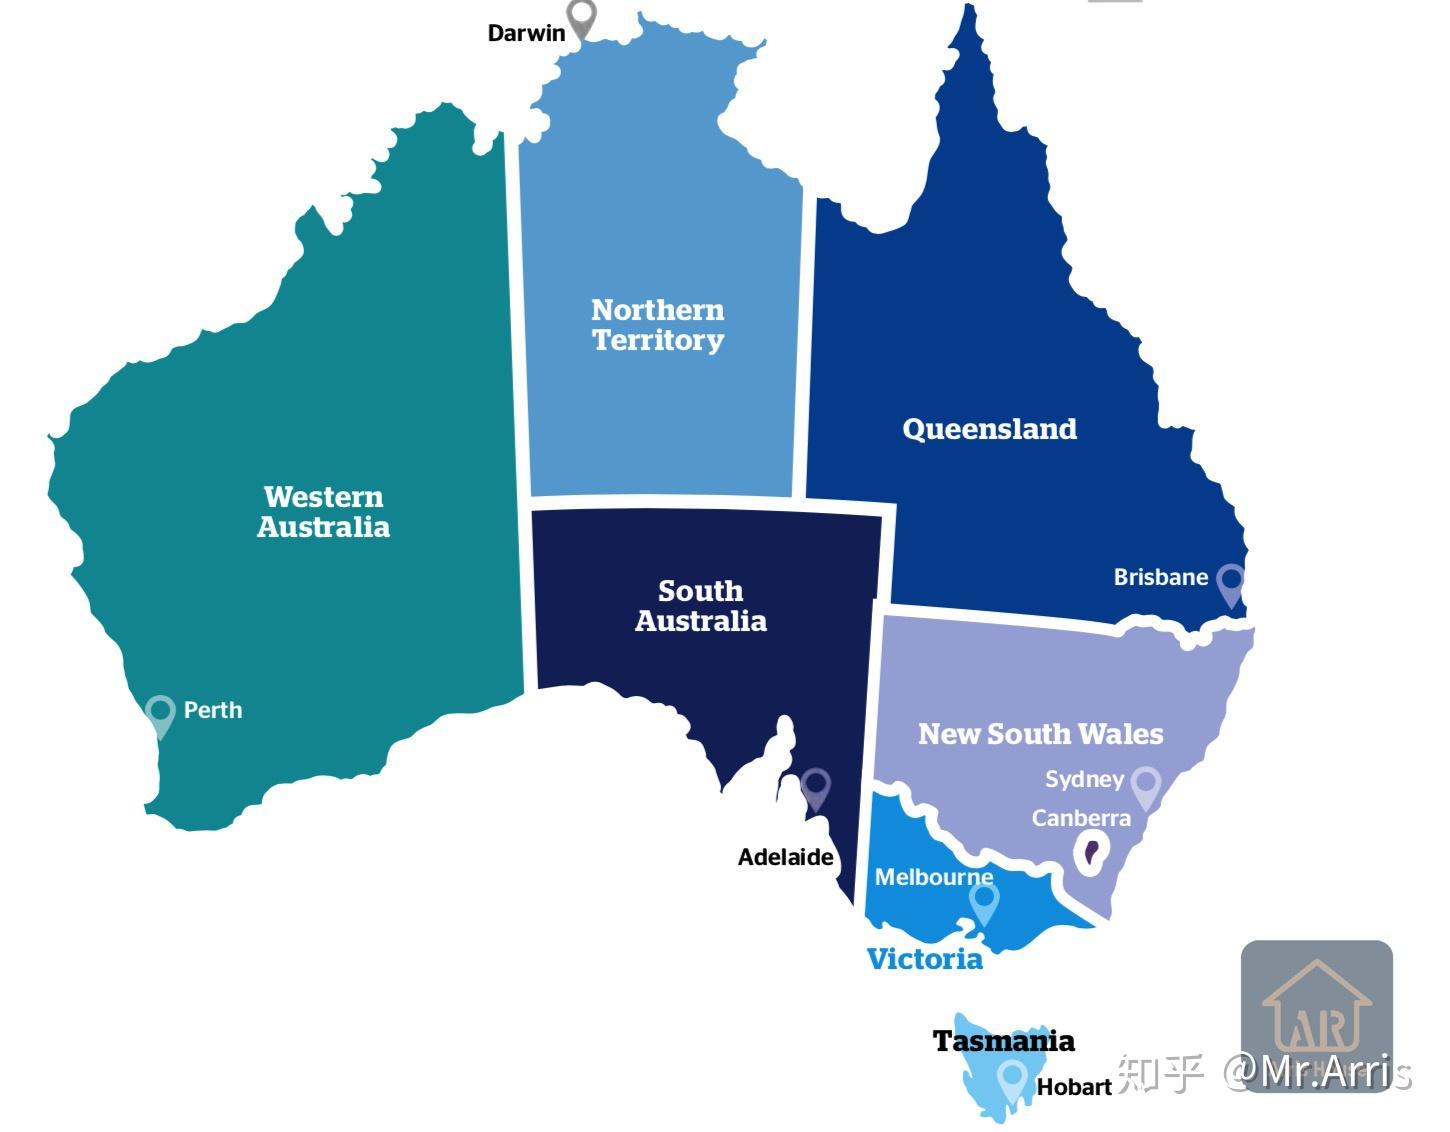 澳大利亚是多元文化的移民国家,一级行政区是按州来划分的,我们先来看